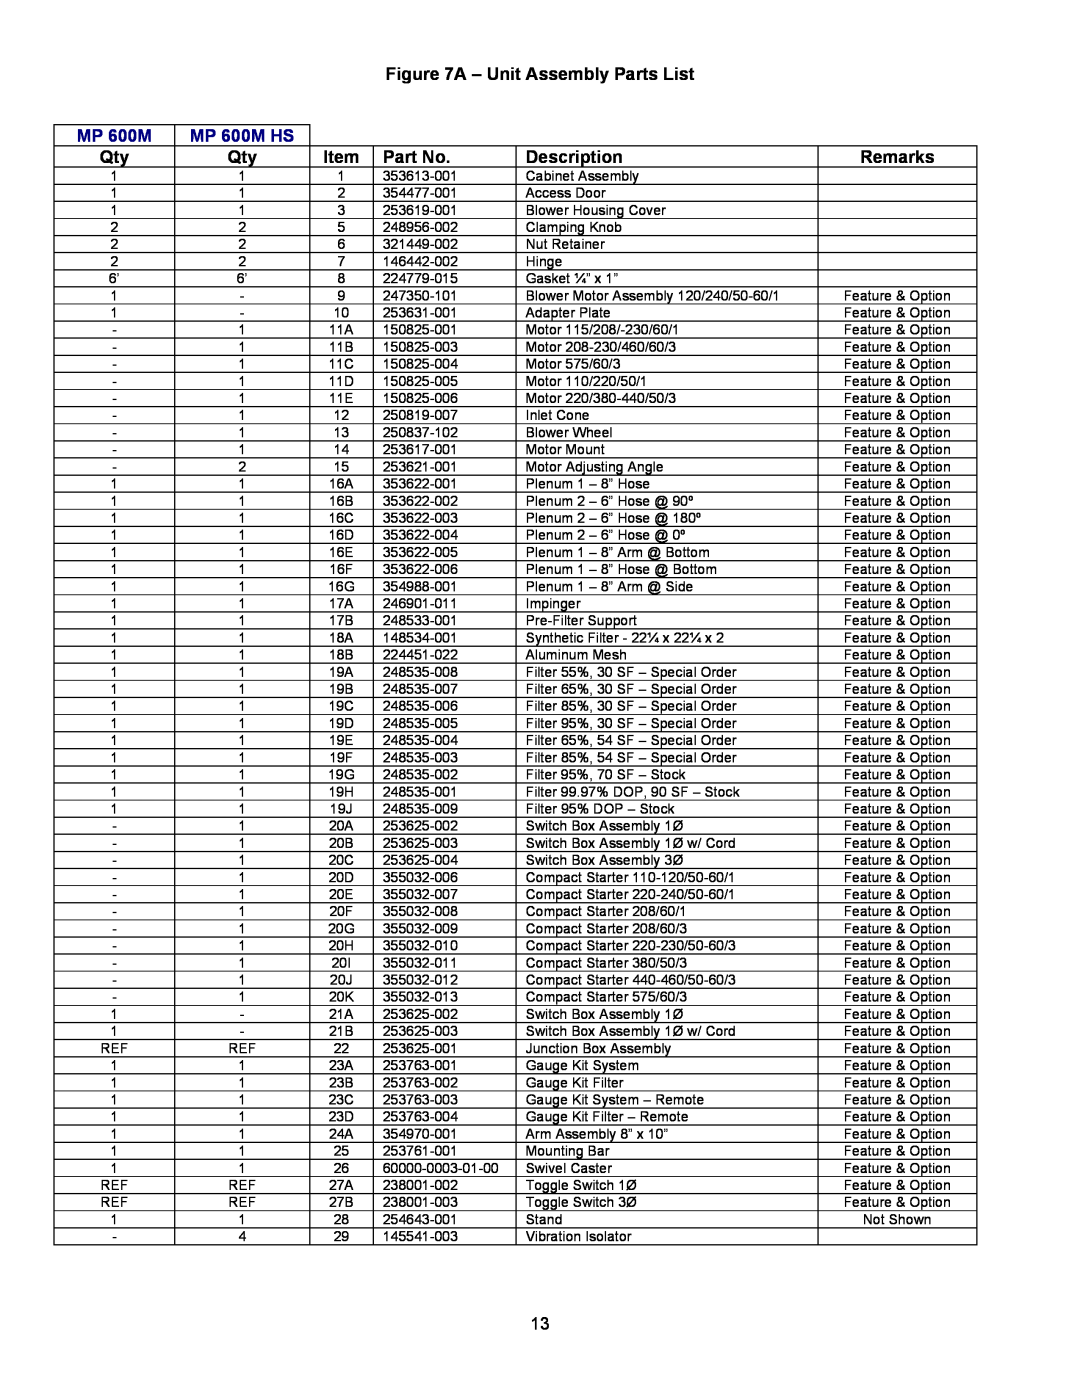 Trion manual A - Unit Assembly Parts List, Description, Remarks, MP 600M HS 